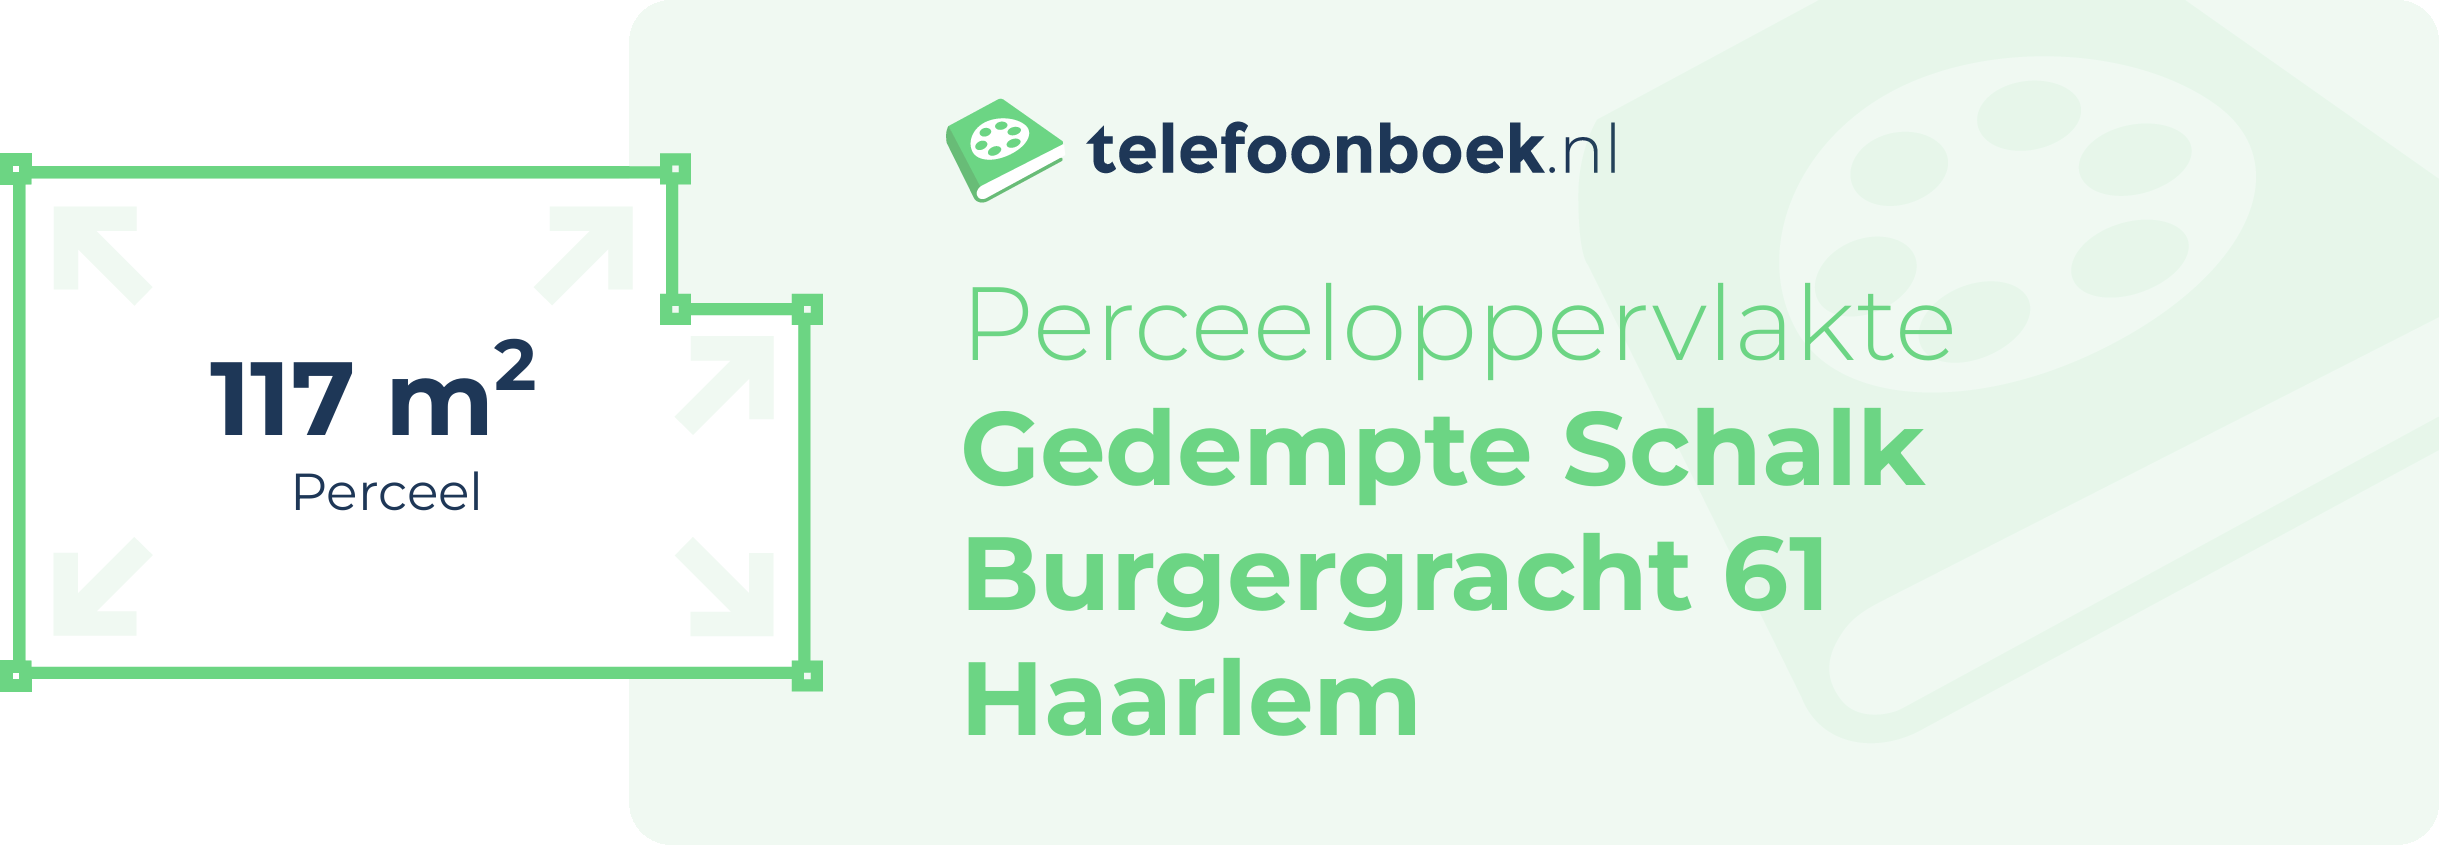 Perceeloppervlakte Gedempte Schalk Burgergracht 61 Haarlem